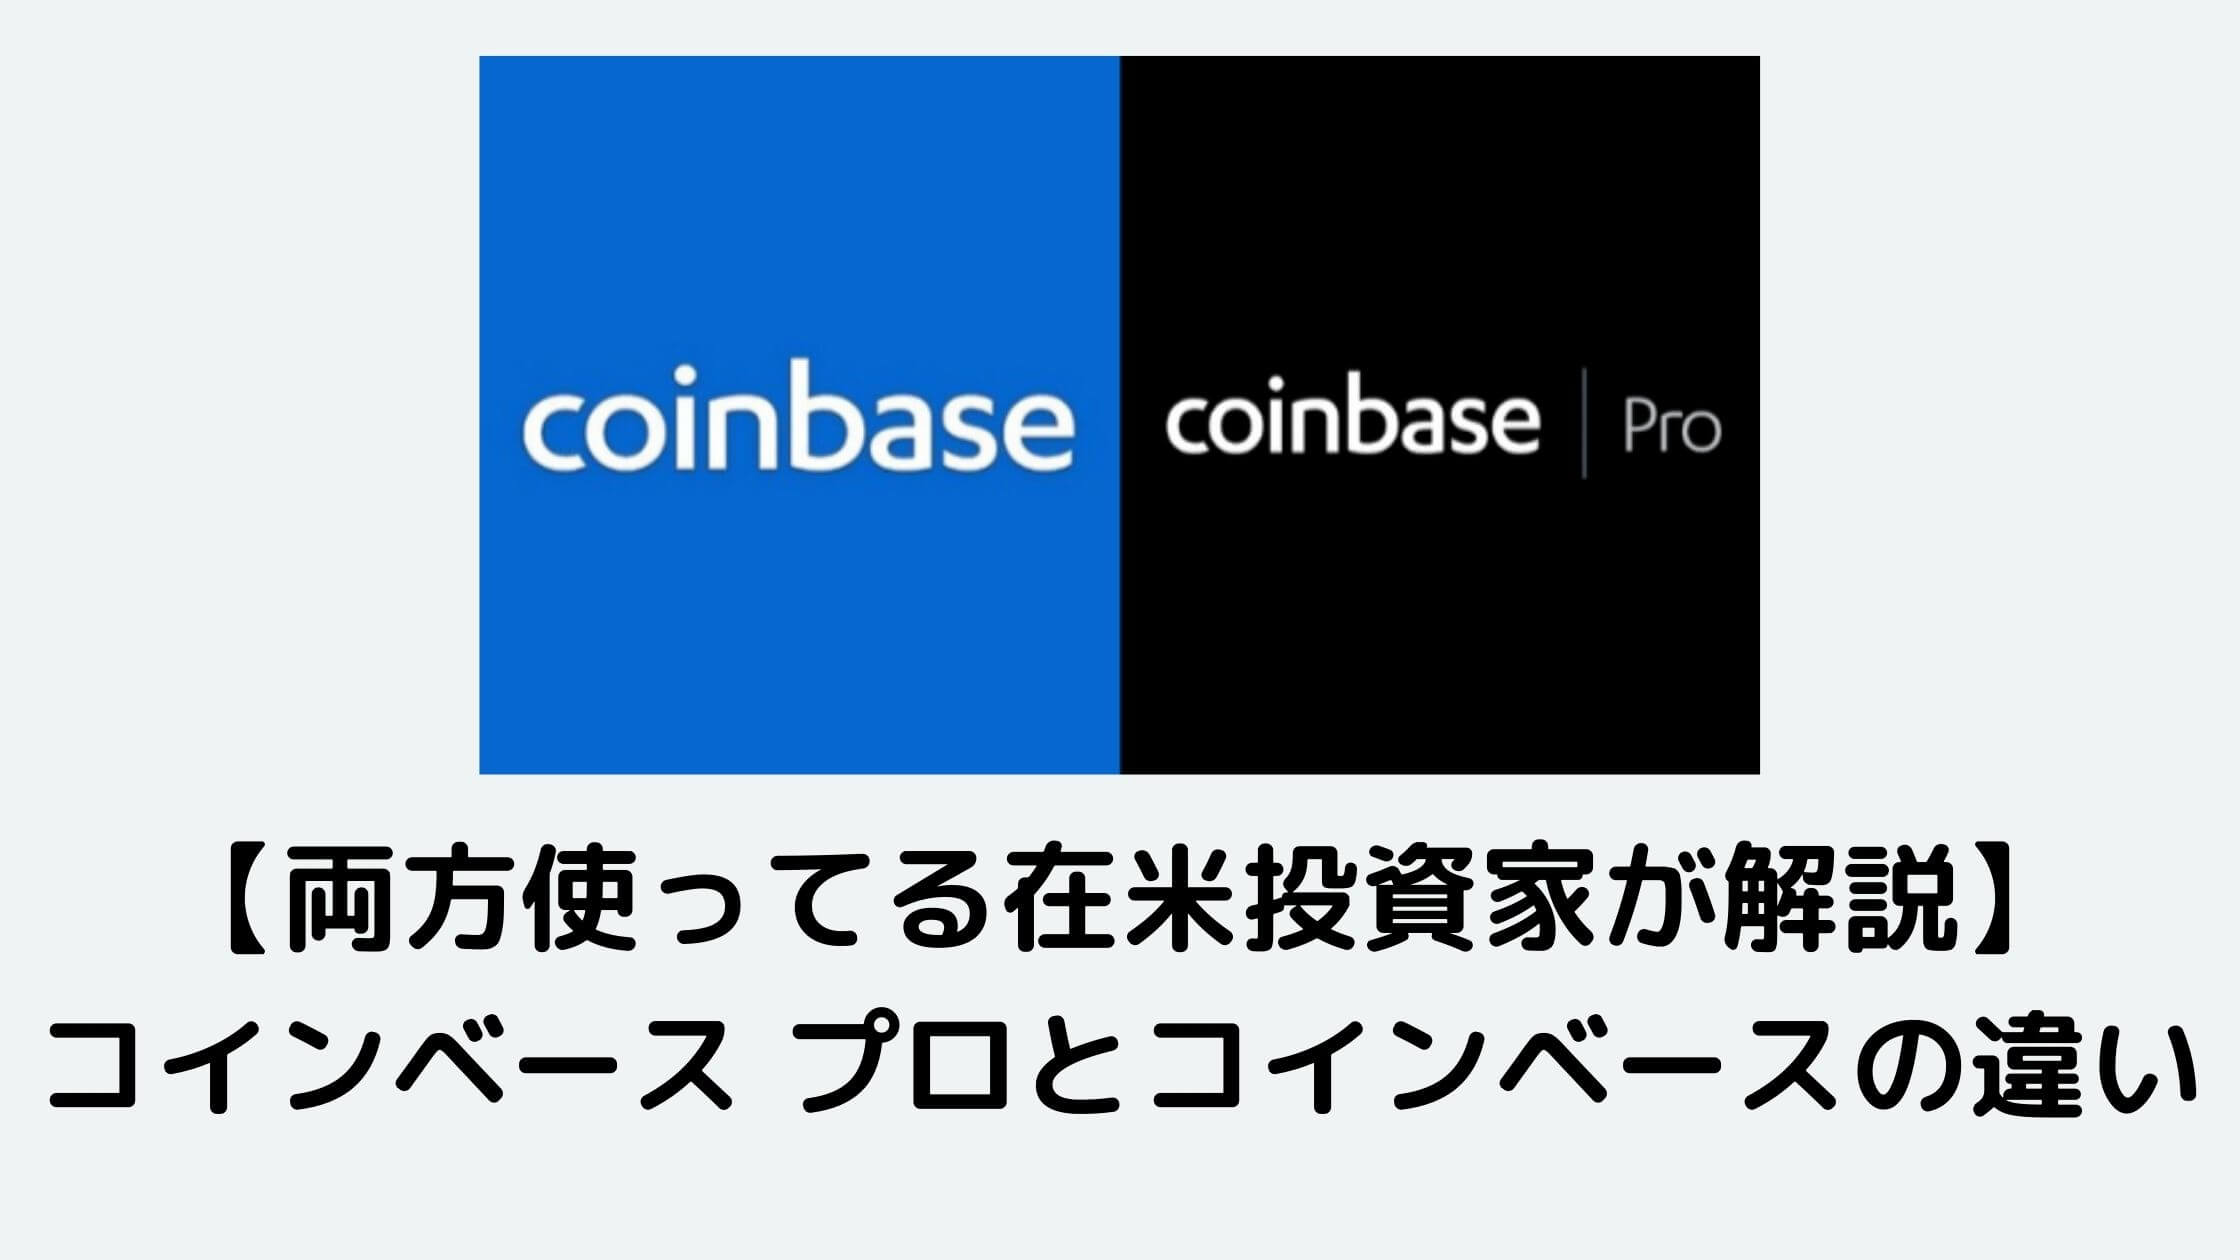 coinbase pro vs coinbase